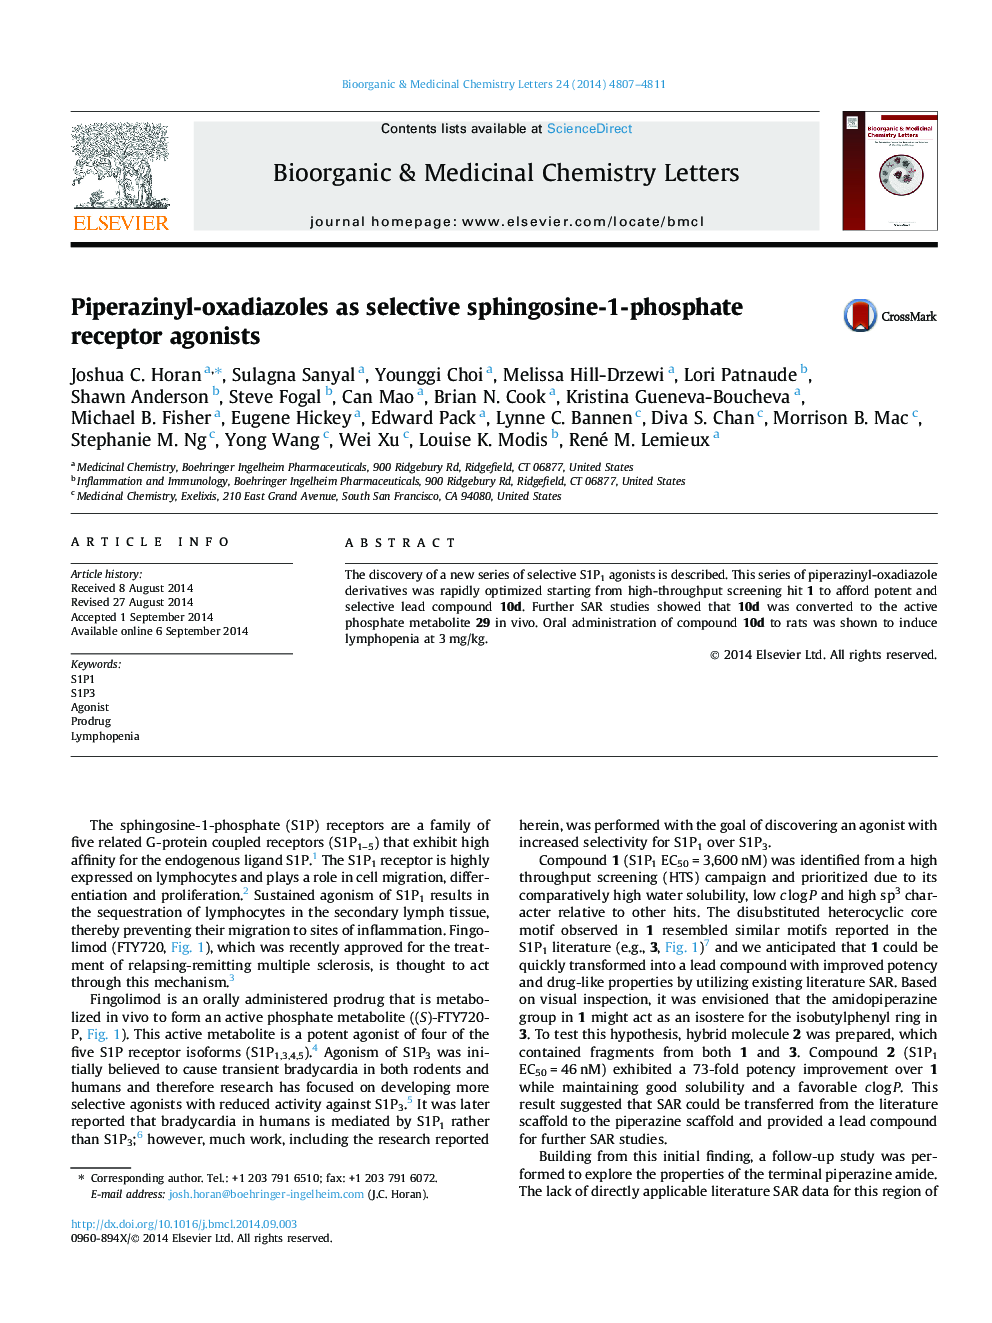 Piperazinyl-oxadiazoles as selective sphingosine-1-phosphate receptor agonists